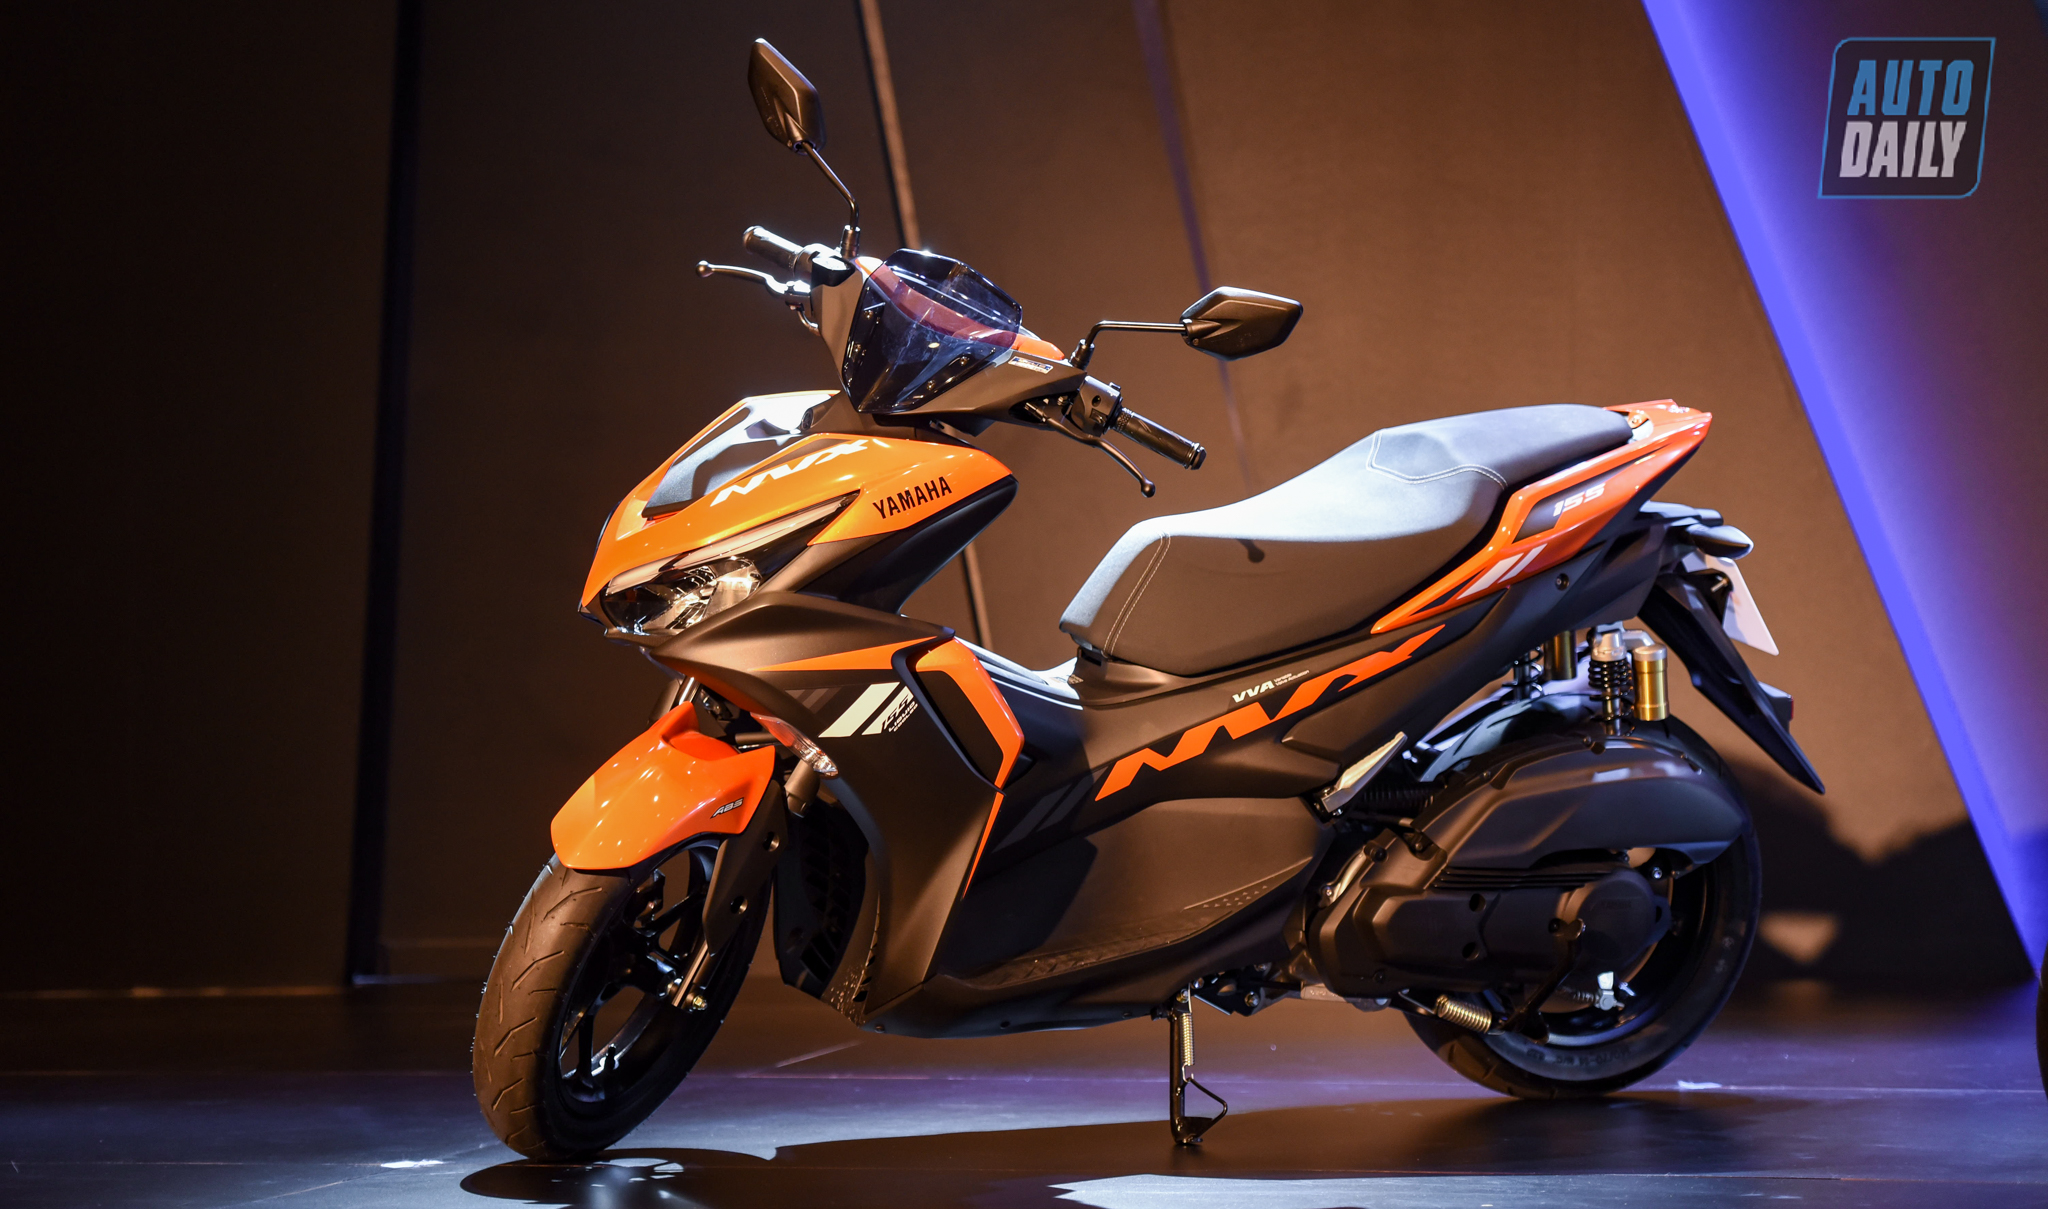 Chi tiết xe tay ga thể thao Yamaha NVX 155 2021 giá từ 53 triệu đồng yamaha-nvx-3.jpg